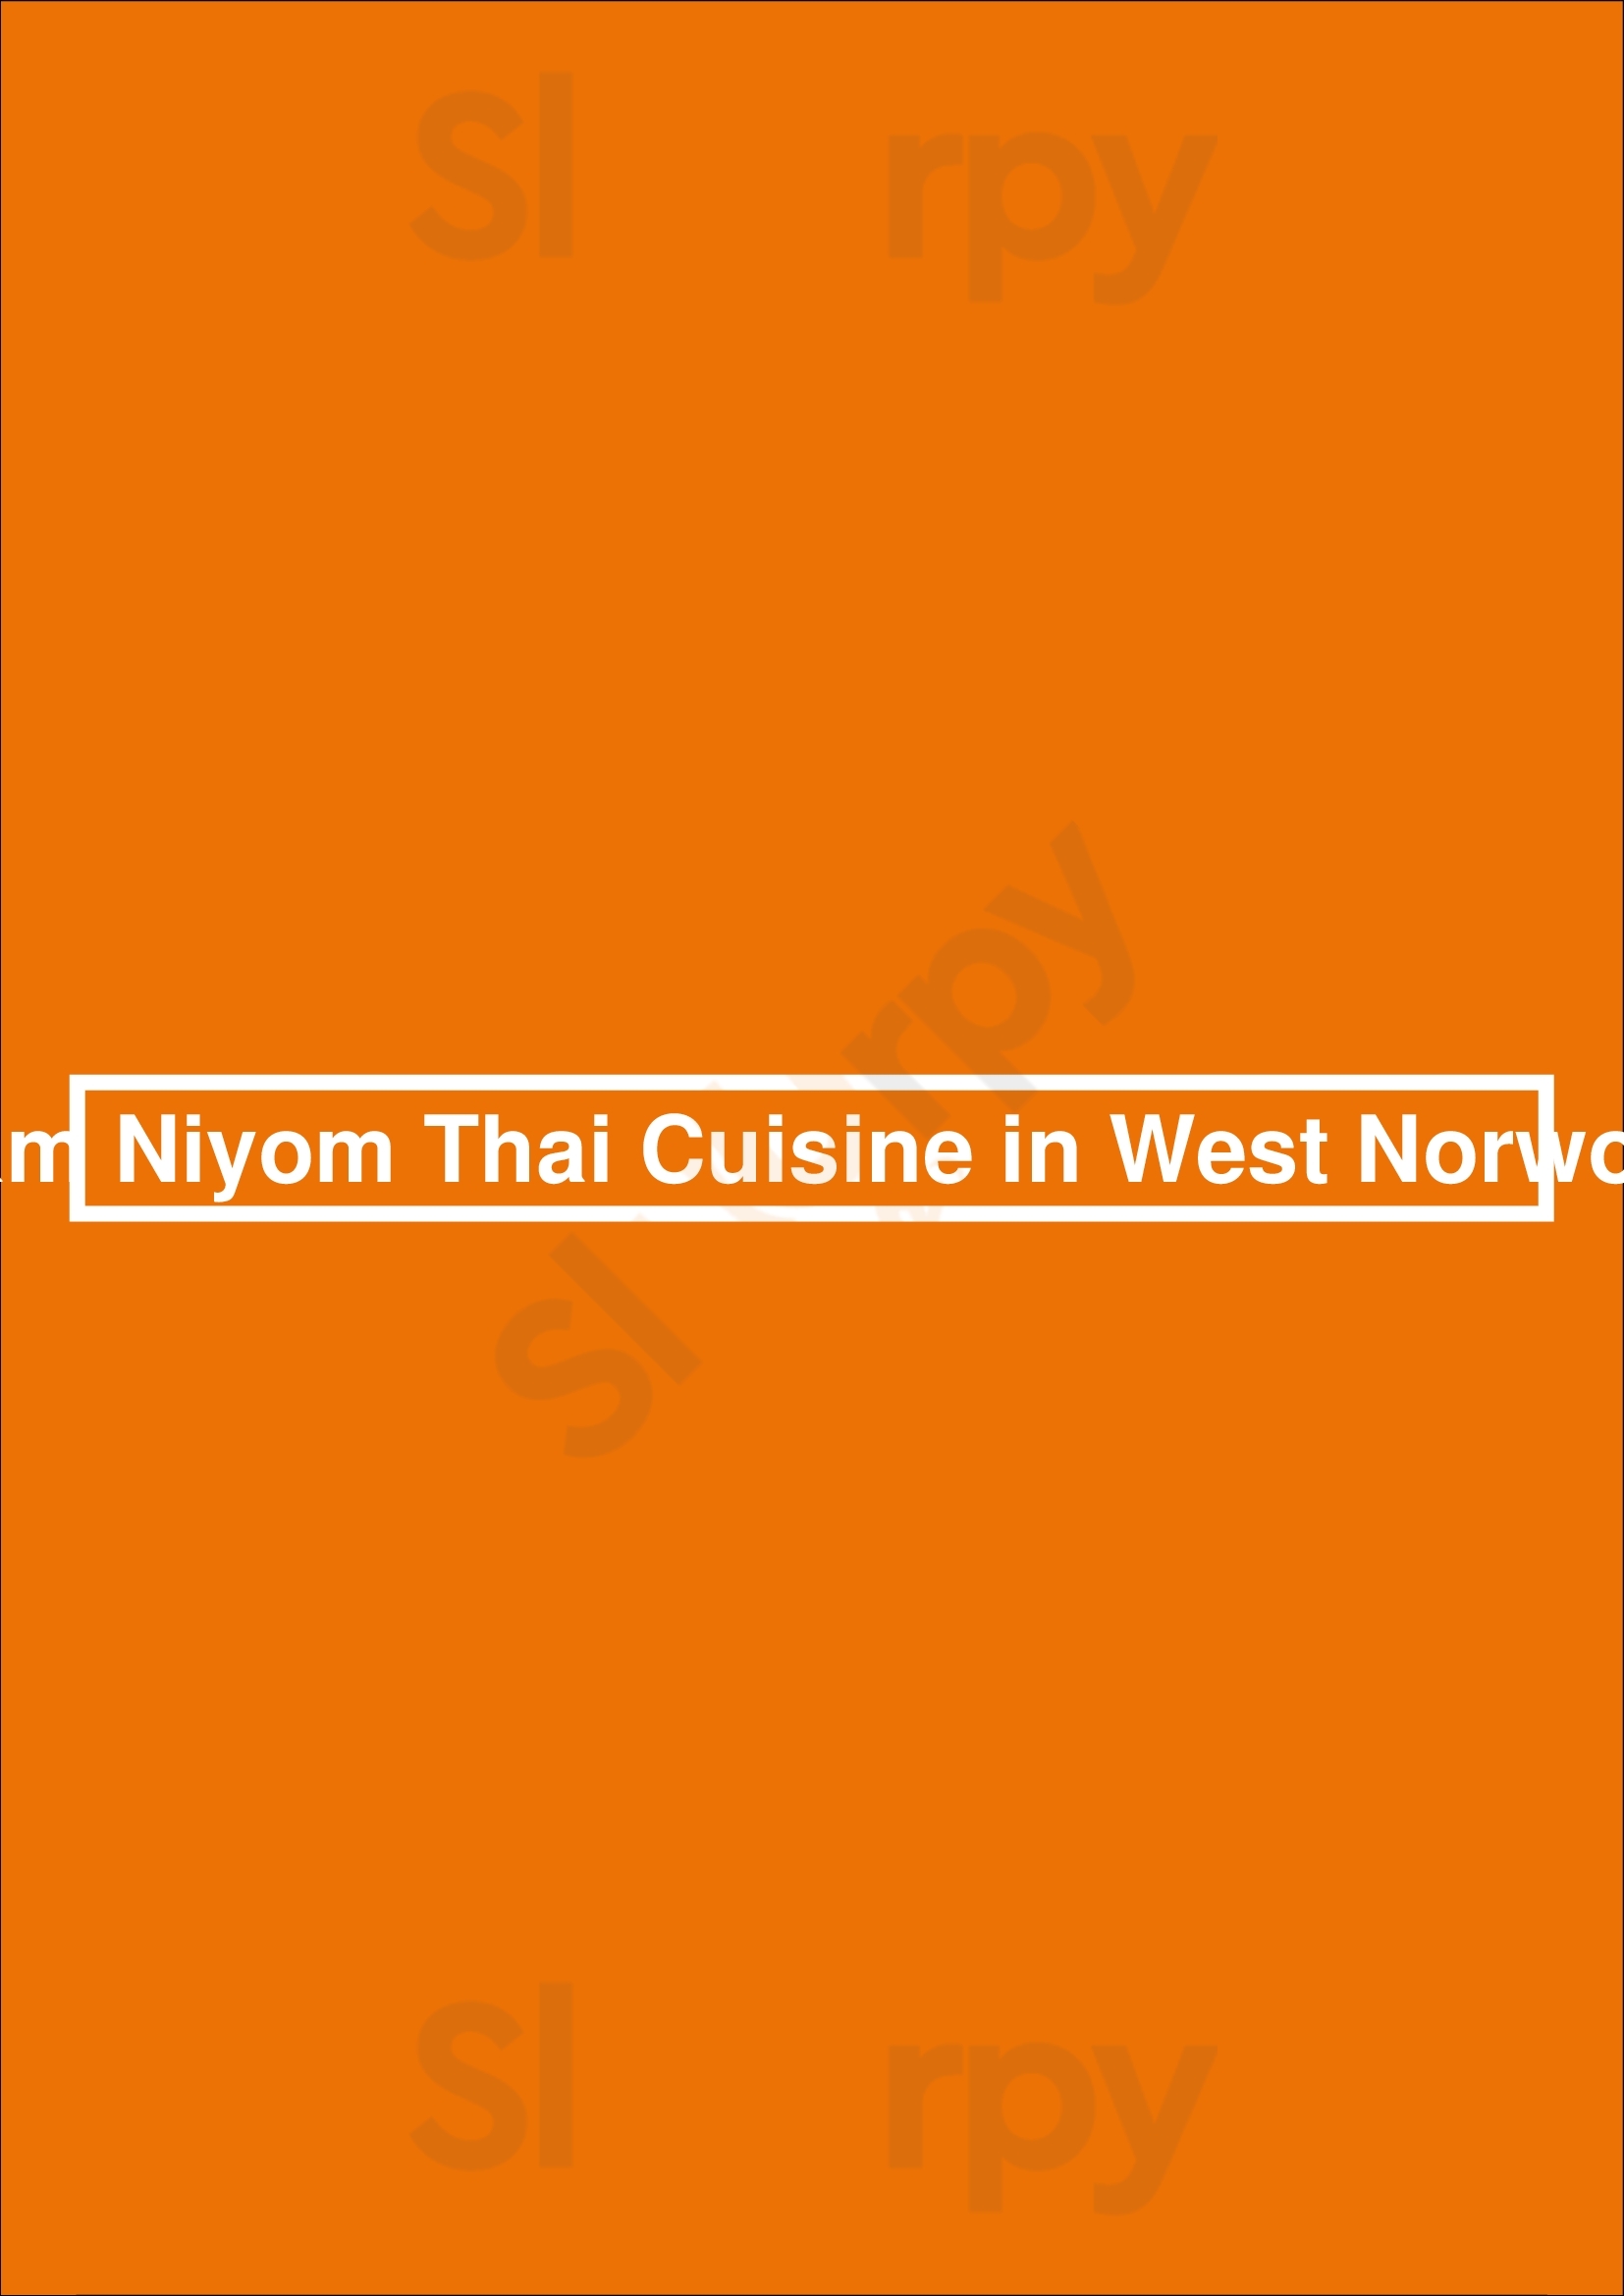 Siam Niyom Thai Cuisine In West Norwood London Menu - 1